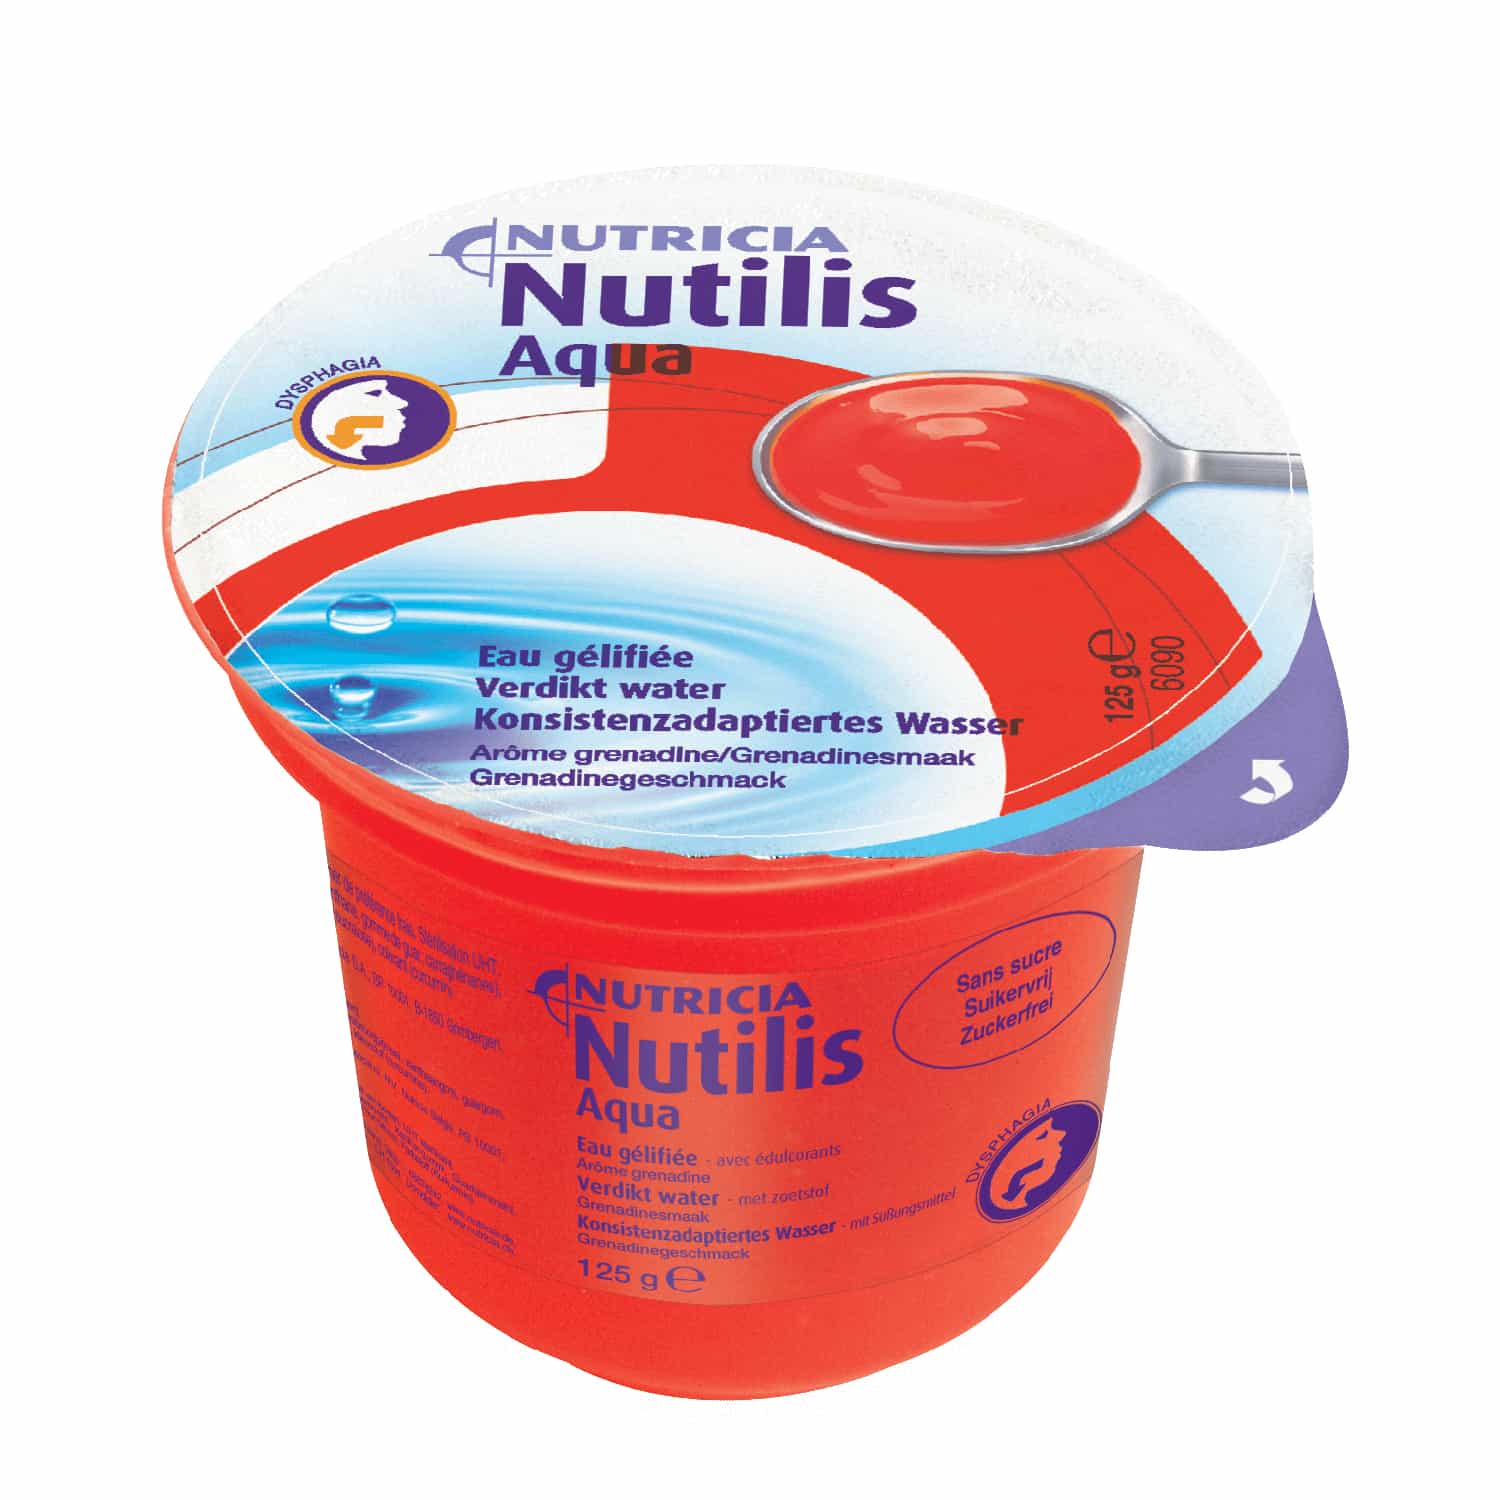 Nutricia Nutilis Aqua Grenadine